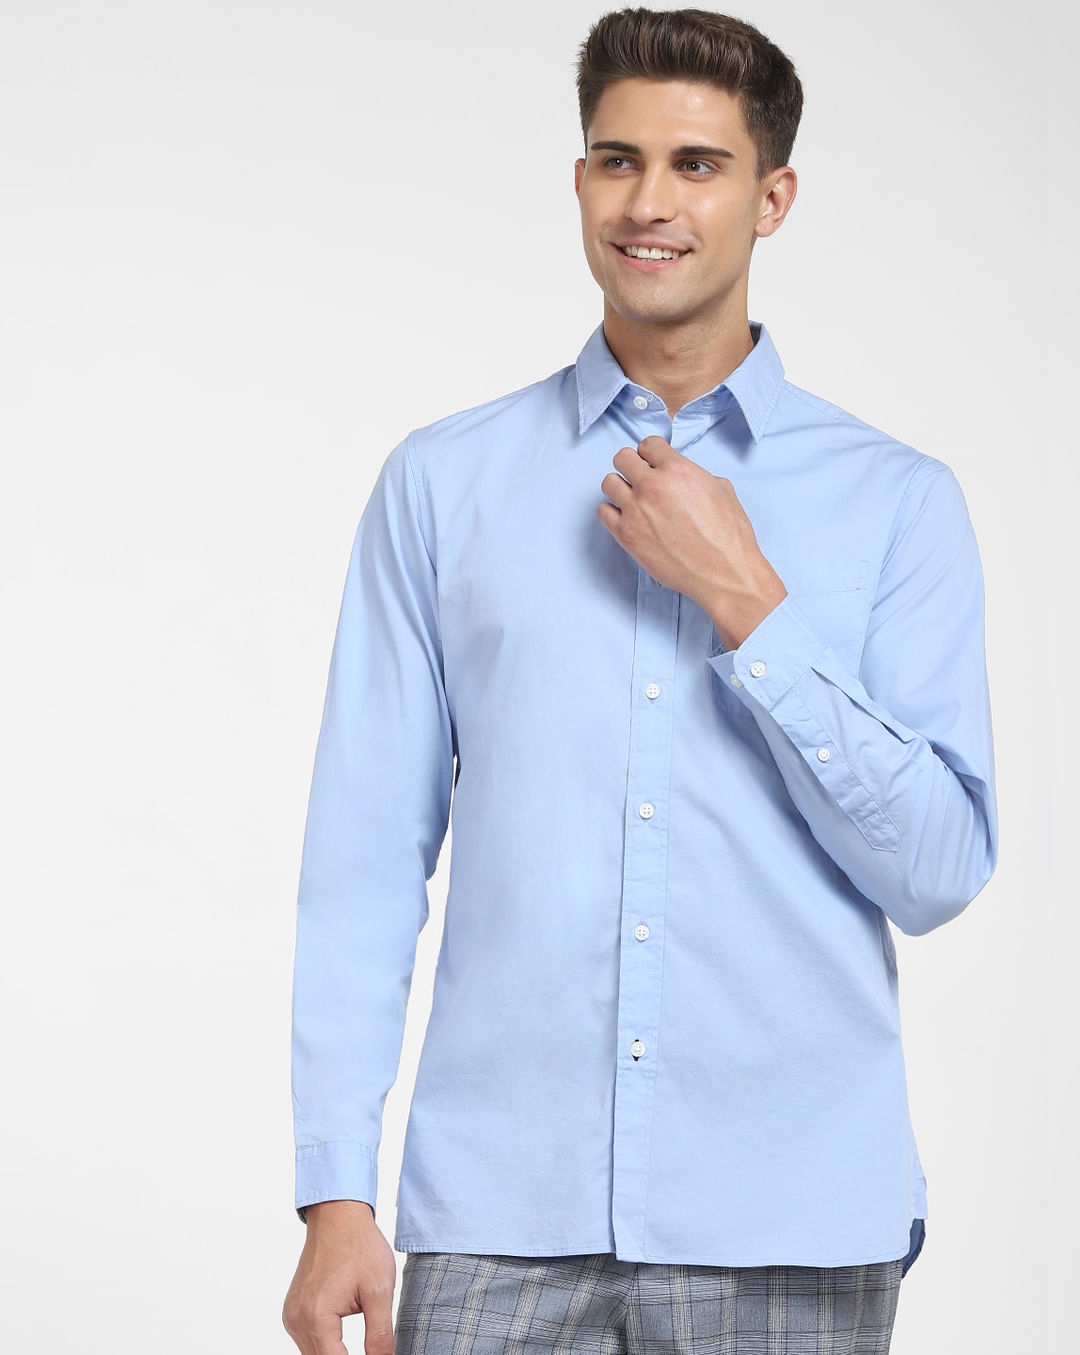 Buy Light Blue Formal Full Sleeves |228538603 Online for Men HOMME SELECTED Shirt at